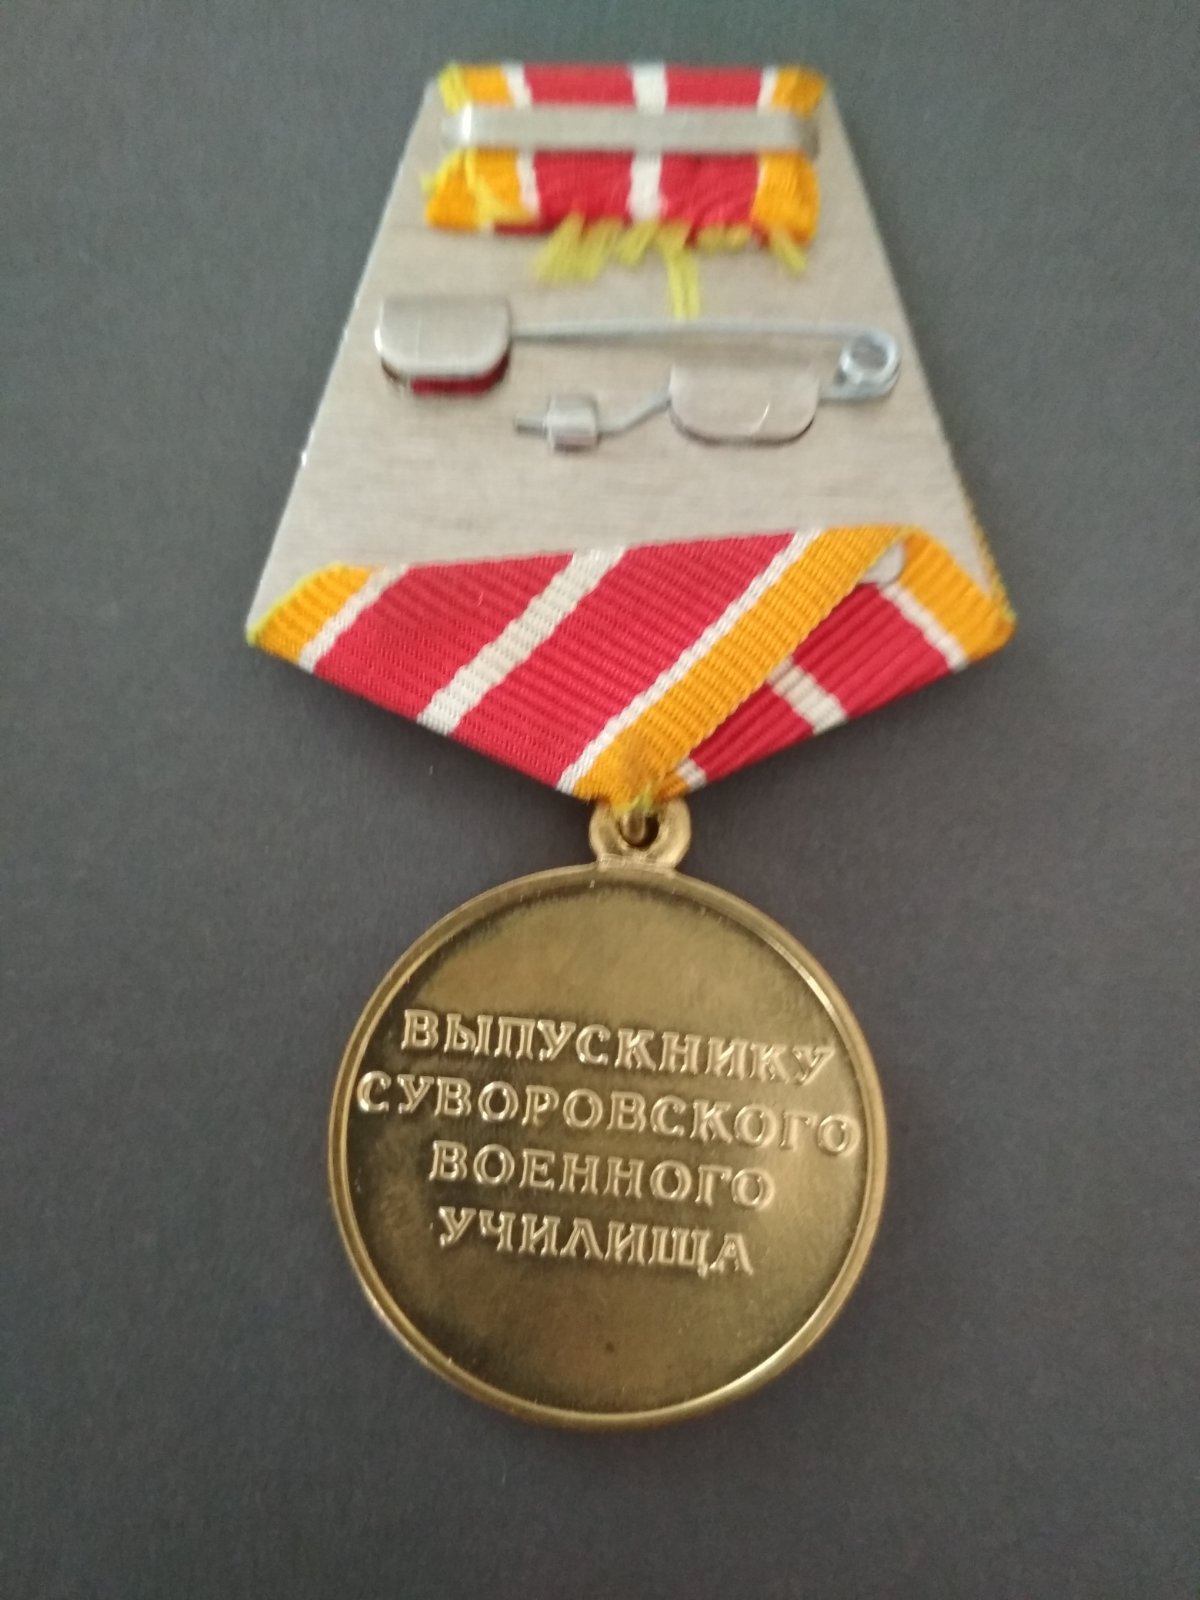 Медаль "Выпускнику Суворовского военного училища".